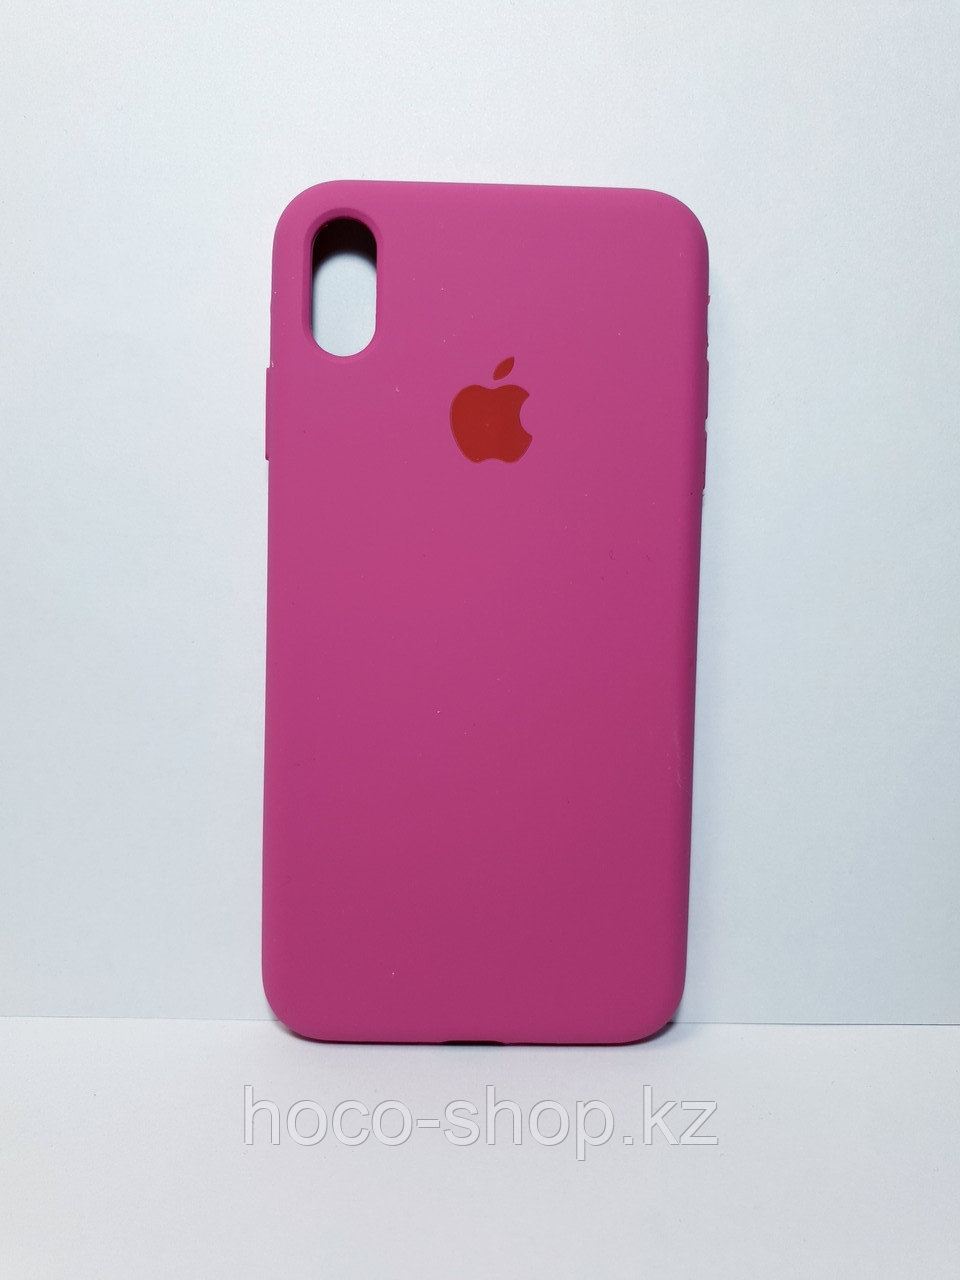 Защитный чехол для iPhone Xs Max Soft Touch силиконовый, темно розовый